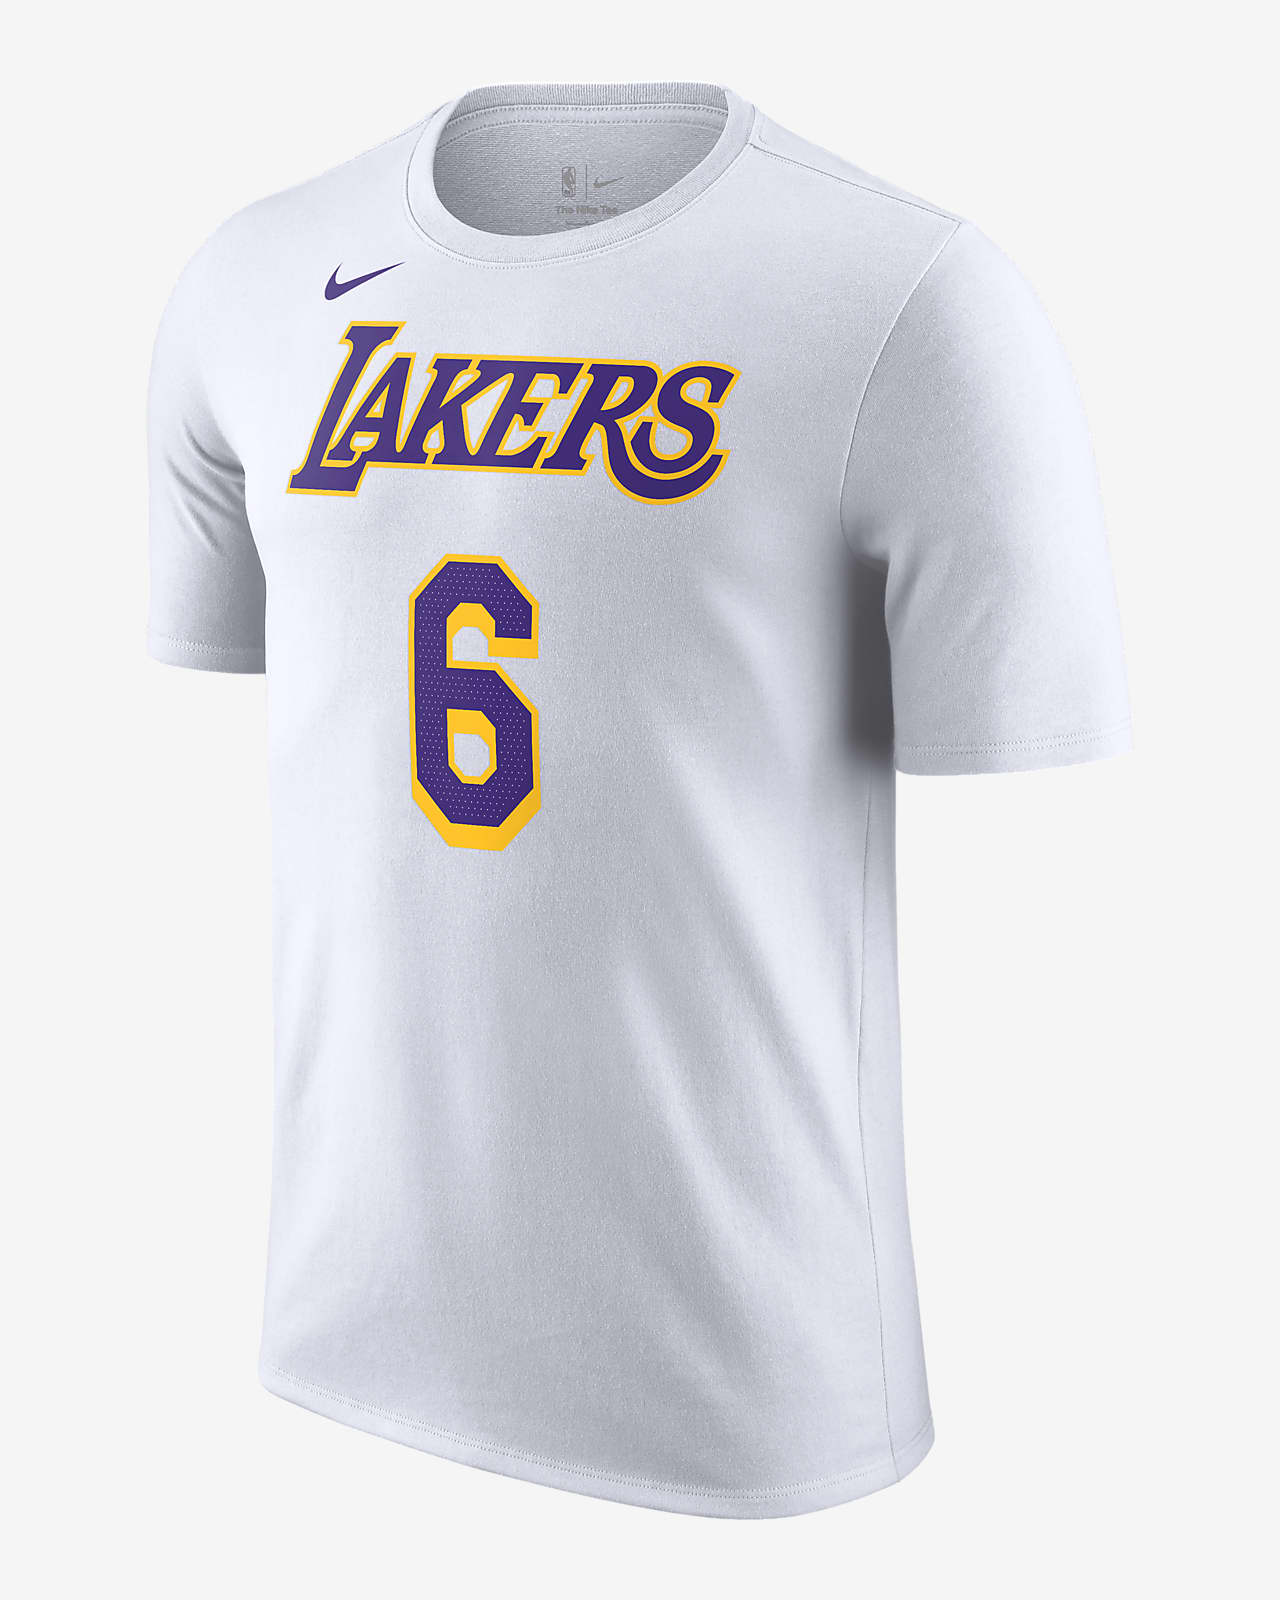 洛杉矶湖人队 Essential Nike NBA 男子T恤